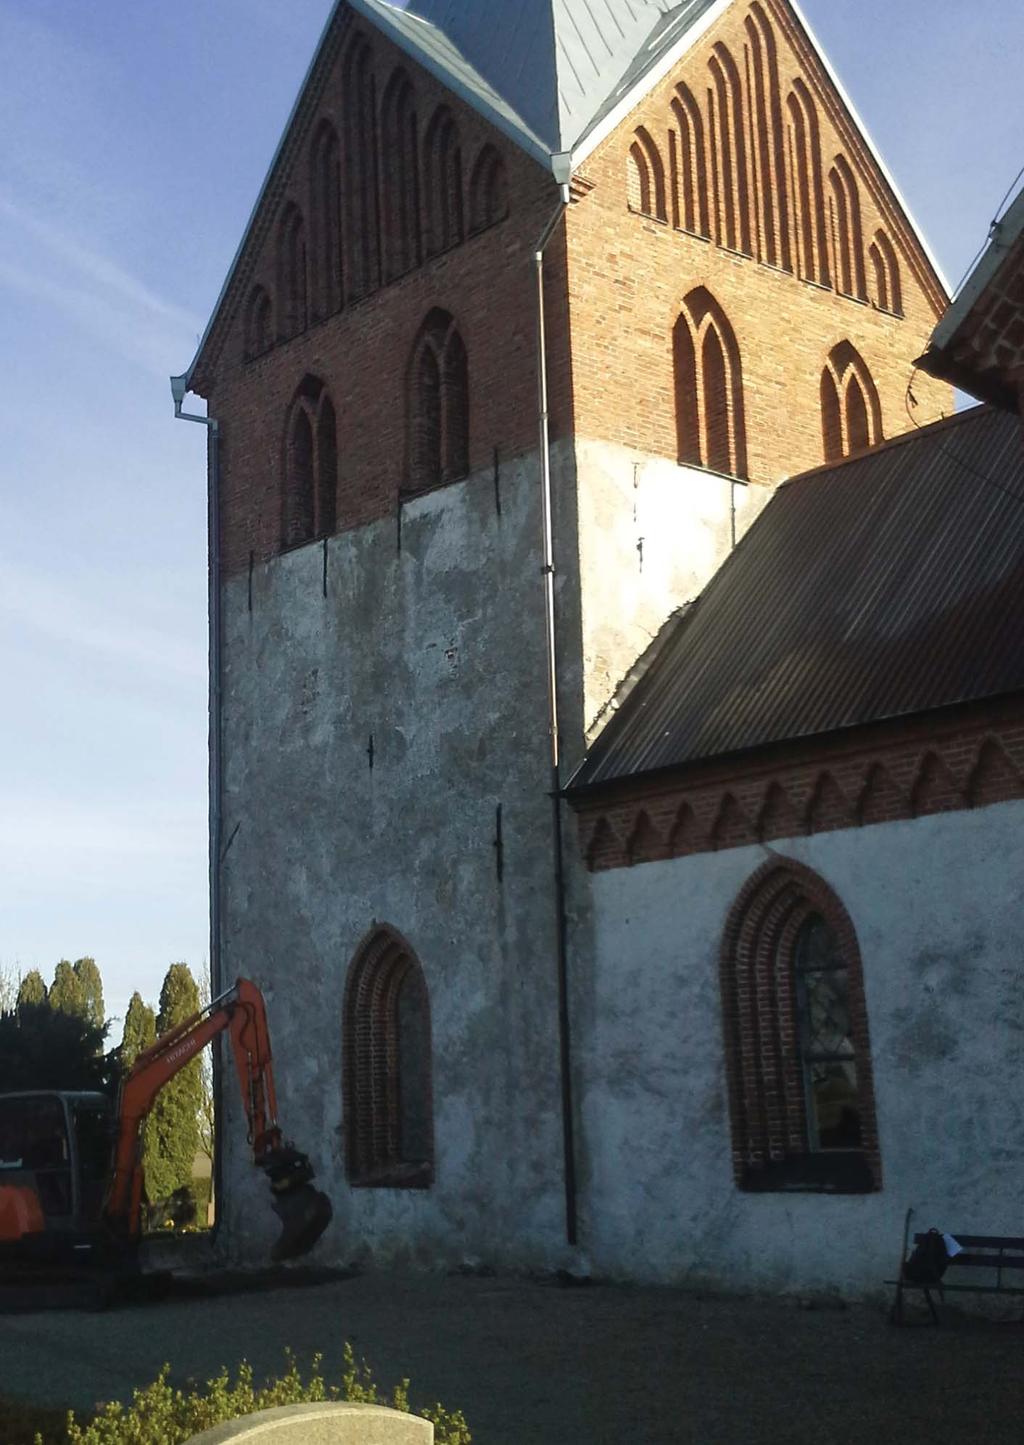 Västra Odarslöv 8:1 - Odarslövs kyrka fornlämning nr 25:1, Odarslövs socken, Lunds kommun, Skåne